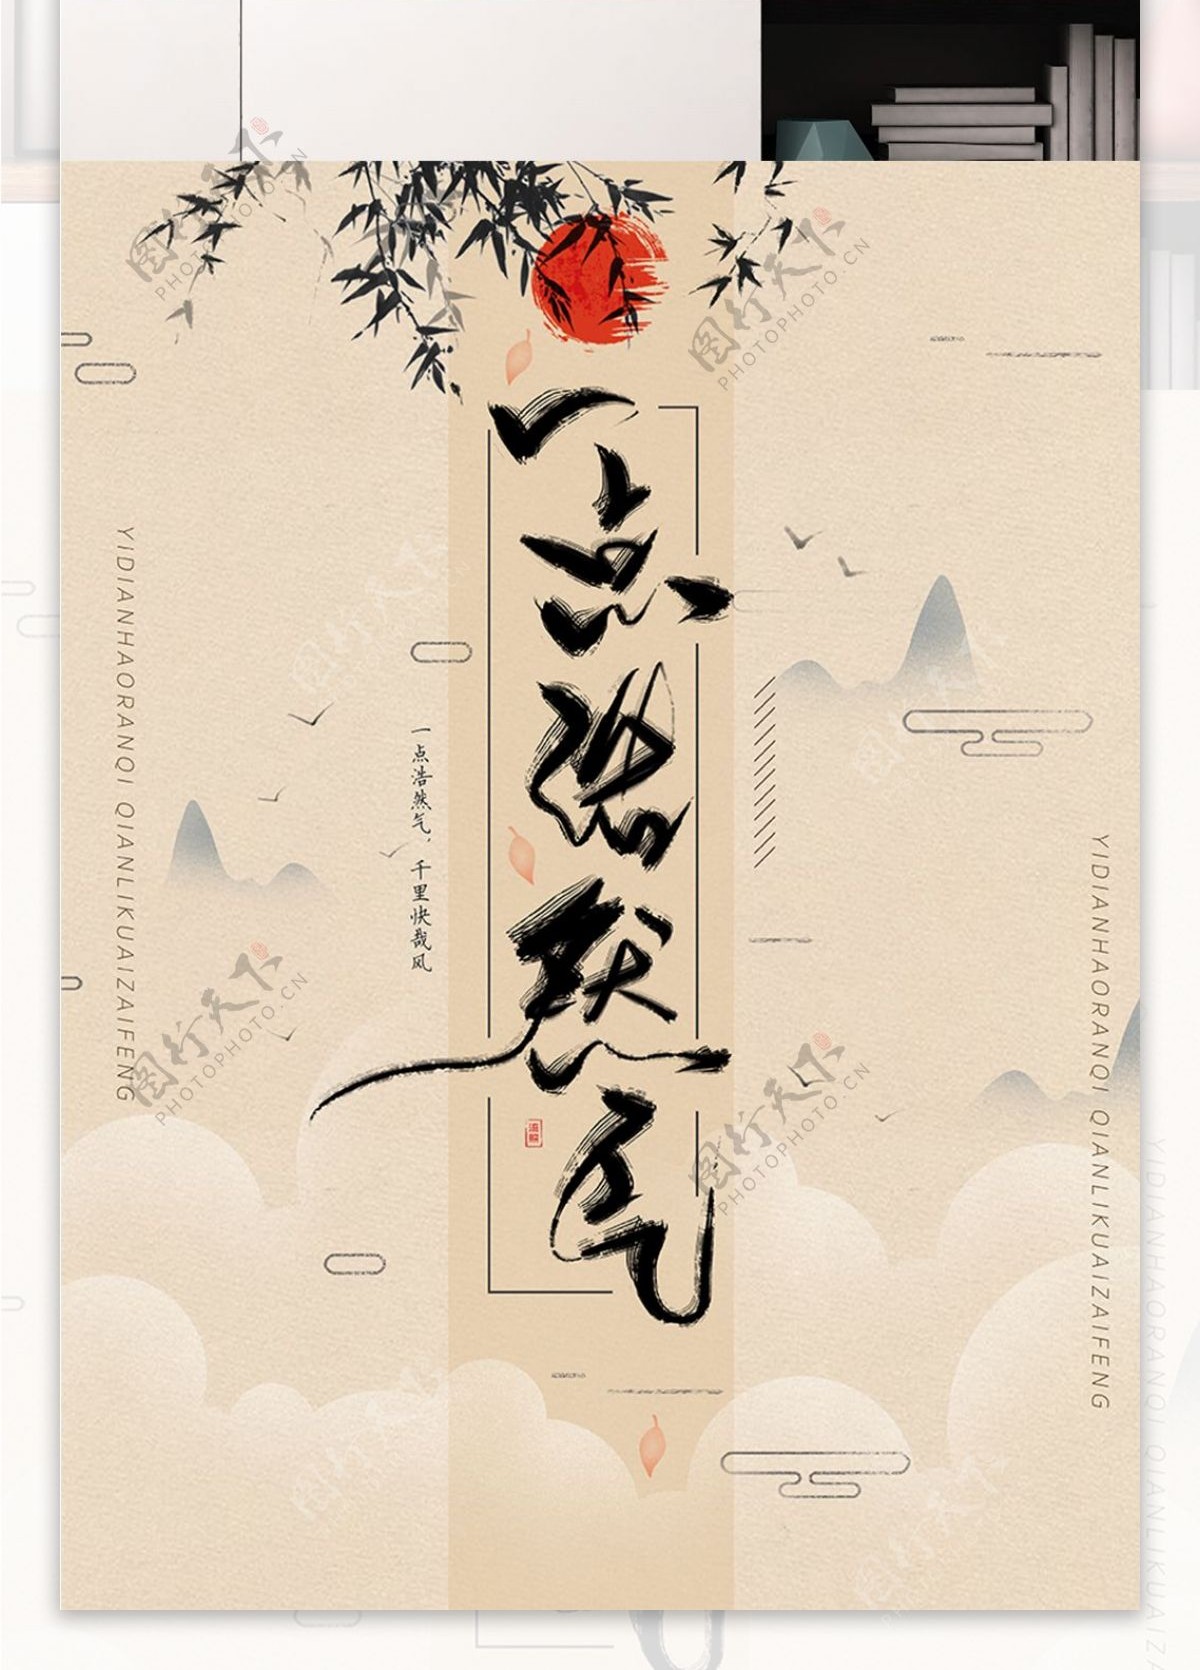 功守道复古中国风水墨书法手写字体海报